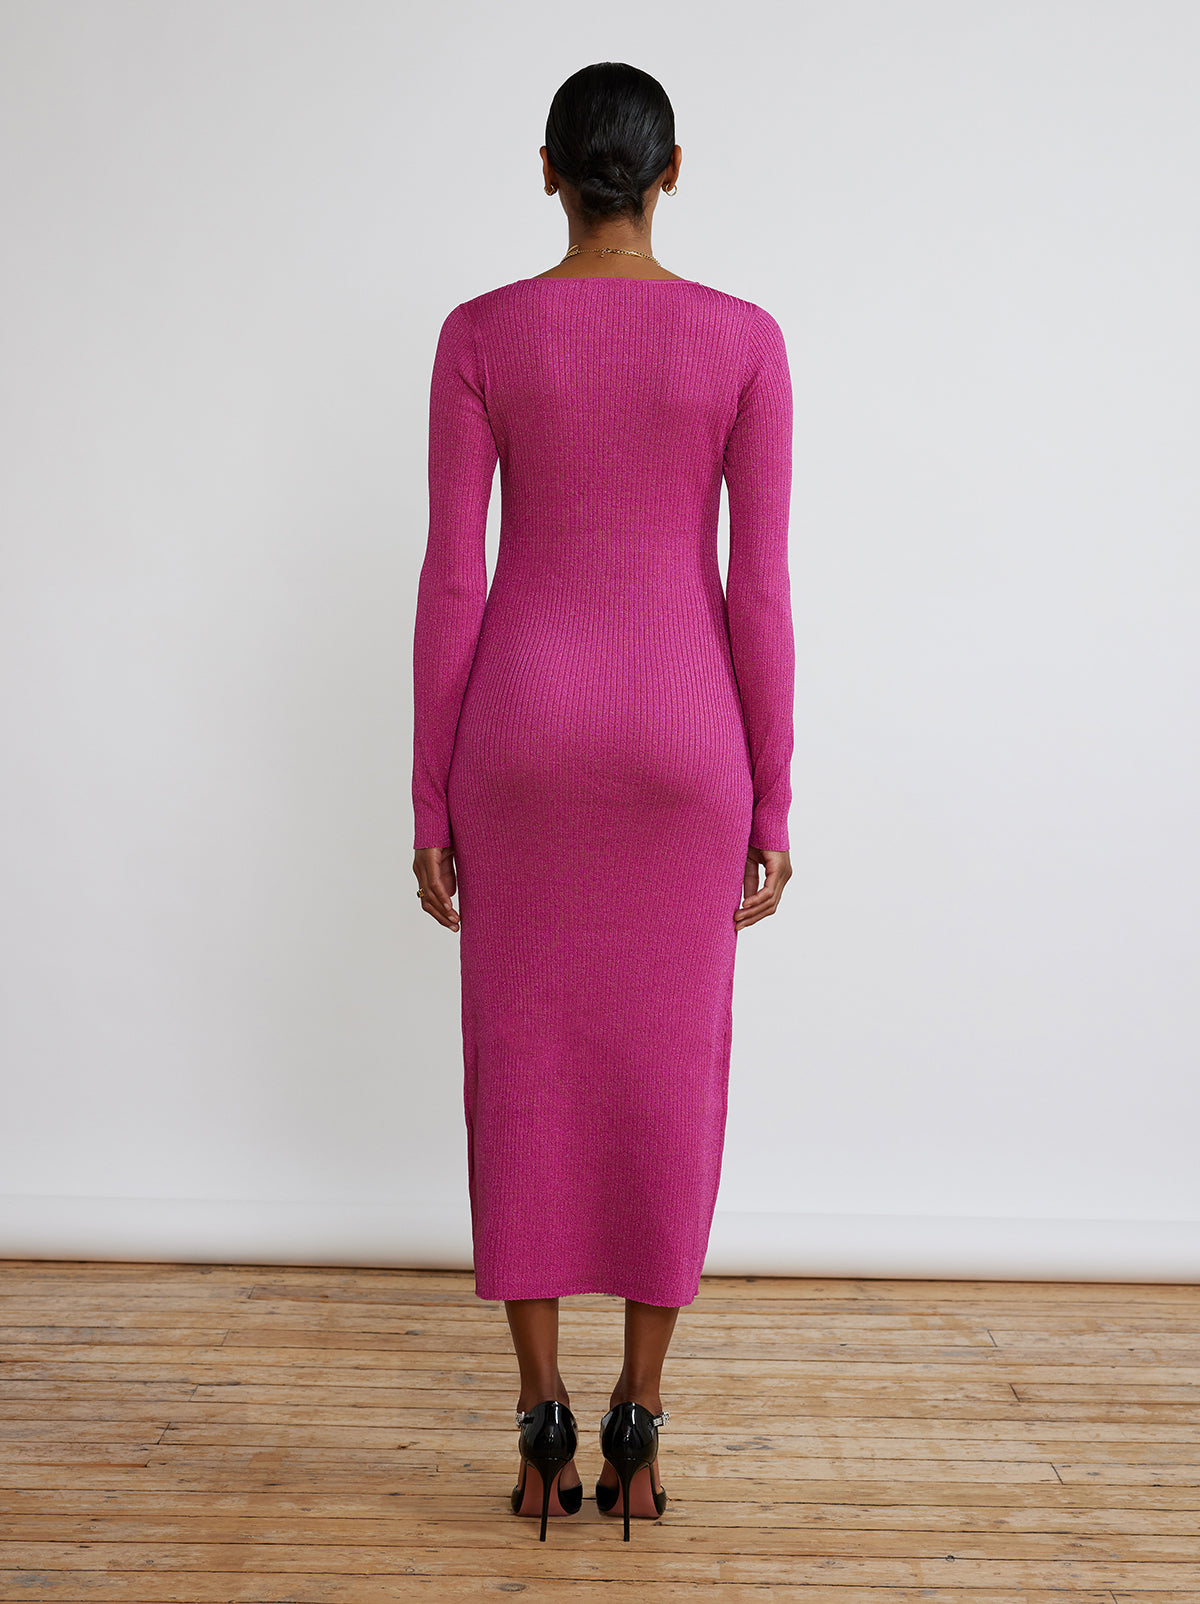 Agnes Pink Lurex Knit Dress by KITRI Studio